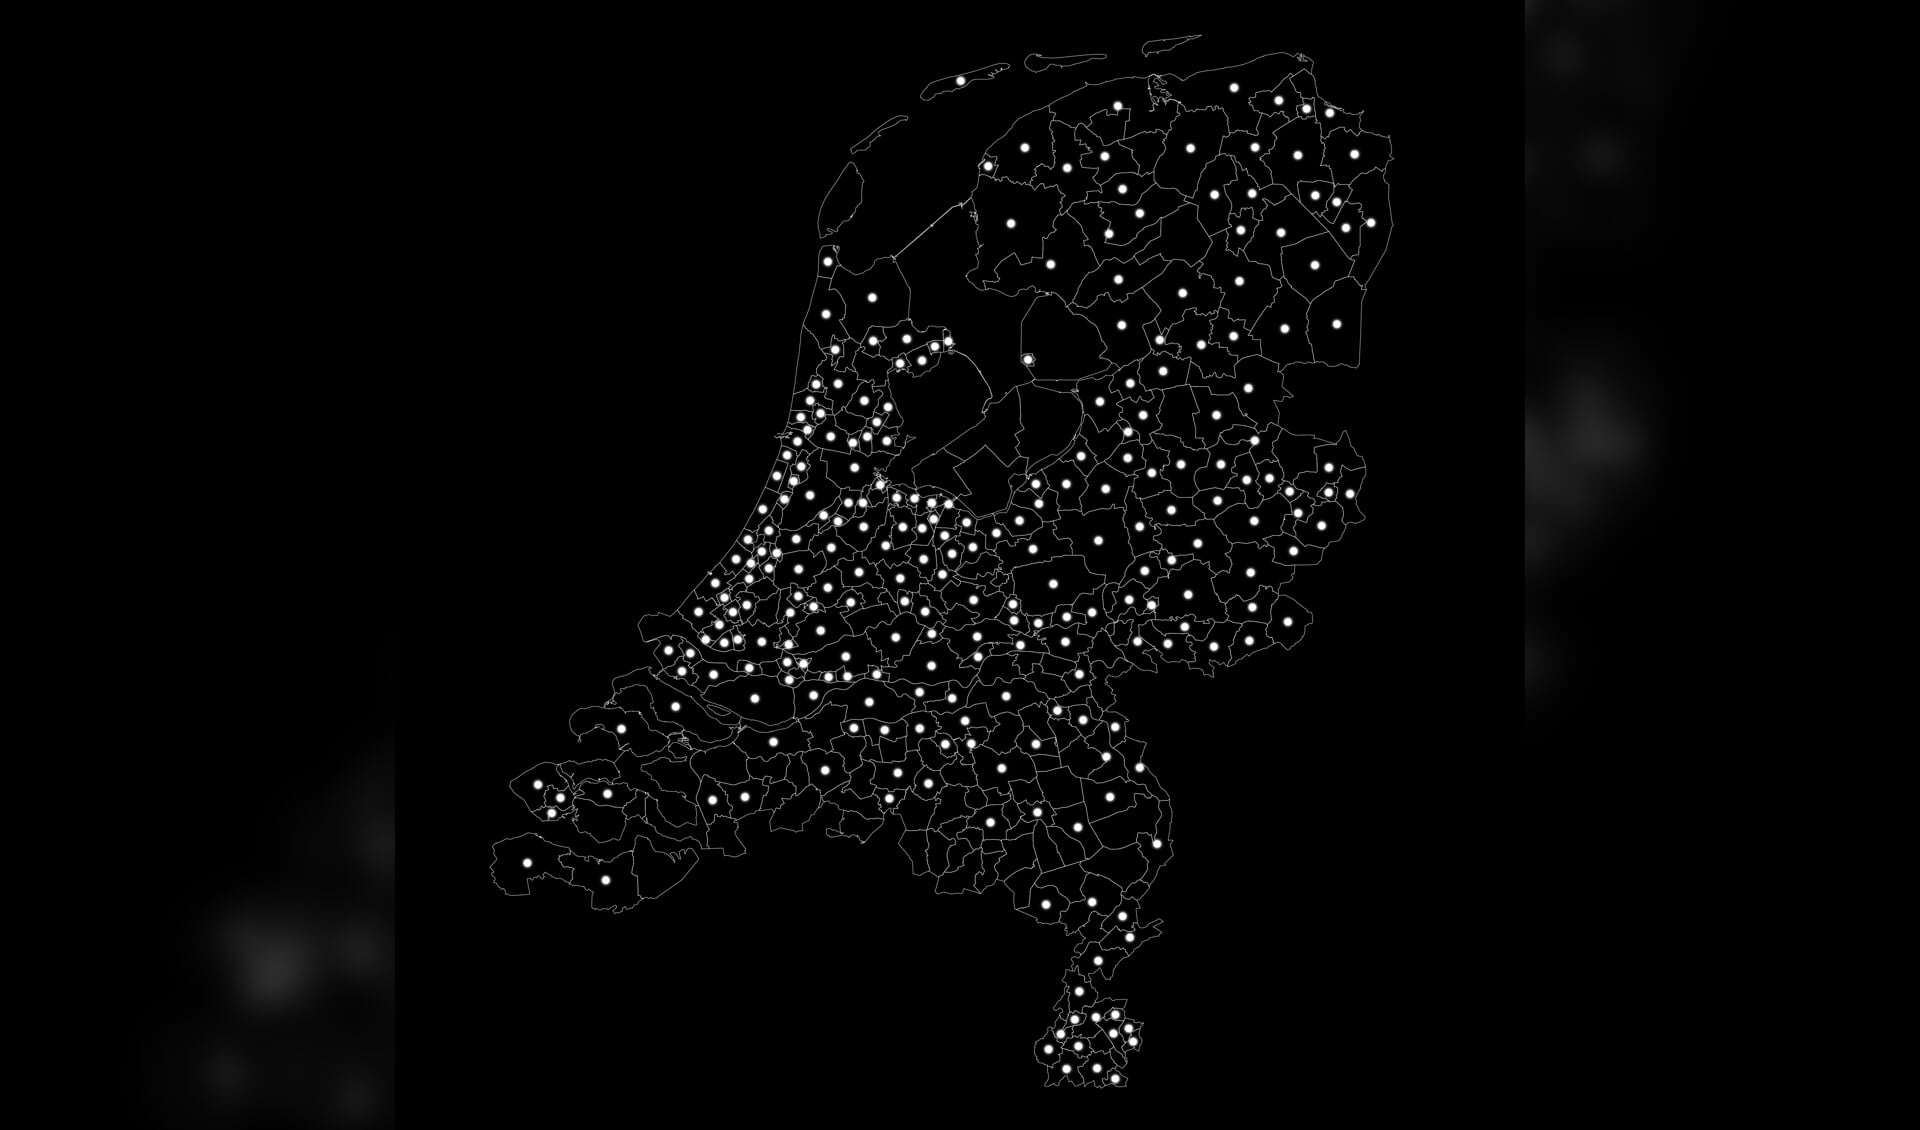 Op de afbeelding de kaart van Nederland met alle gemeenten waar Joden, Sinti en Roma zijn gedeporteerd. Hier zullen de tijdelijke monumenten straks te zien zijn. Beeld: Studio Roosegaarde